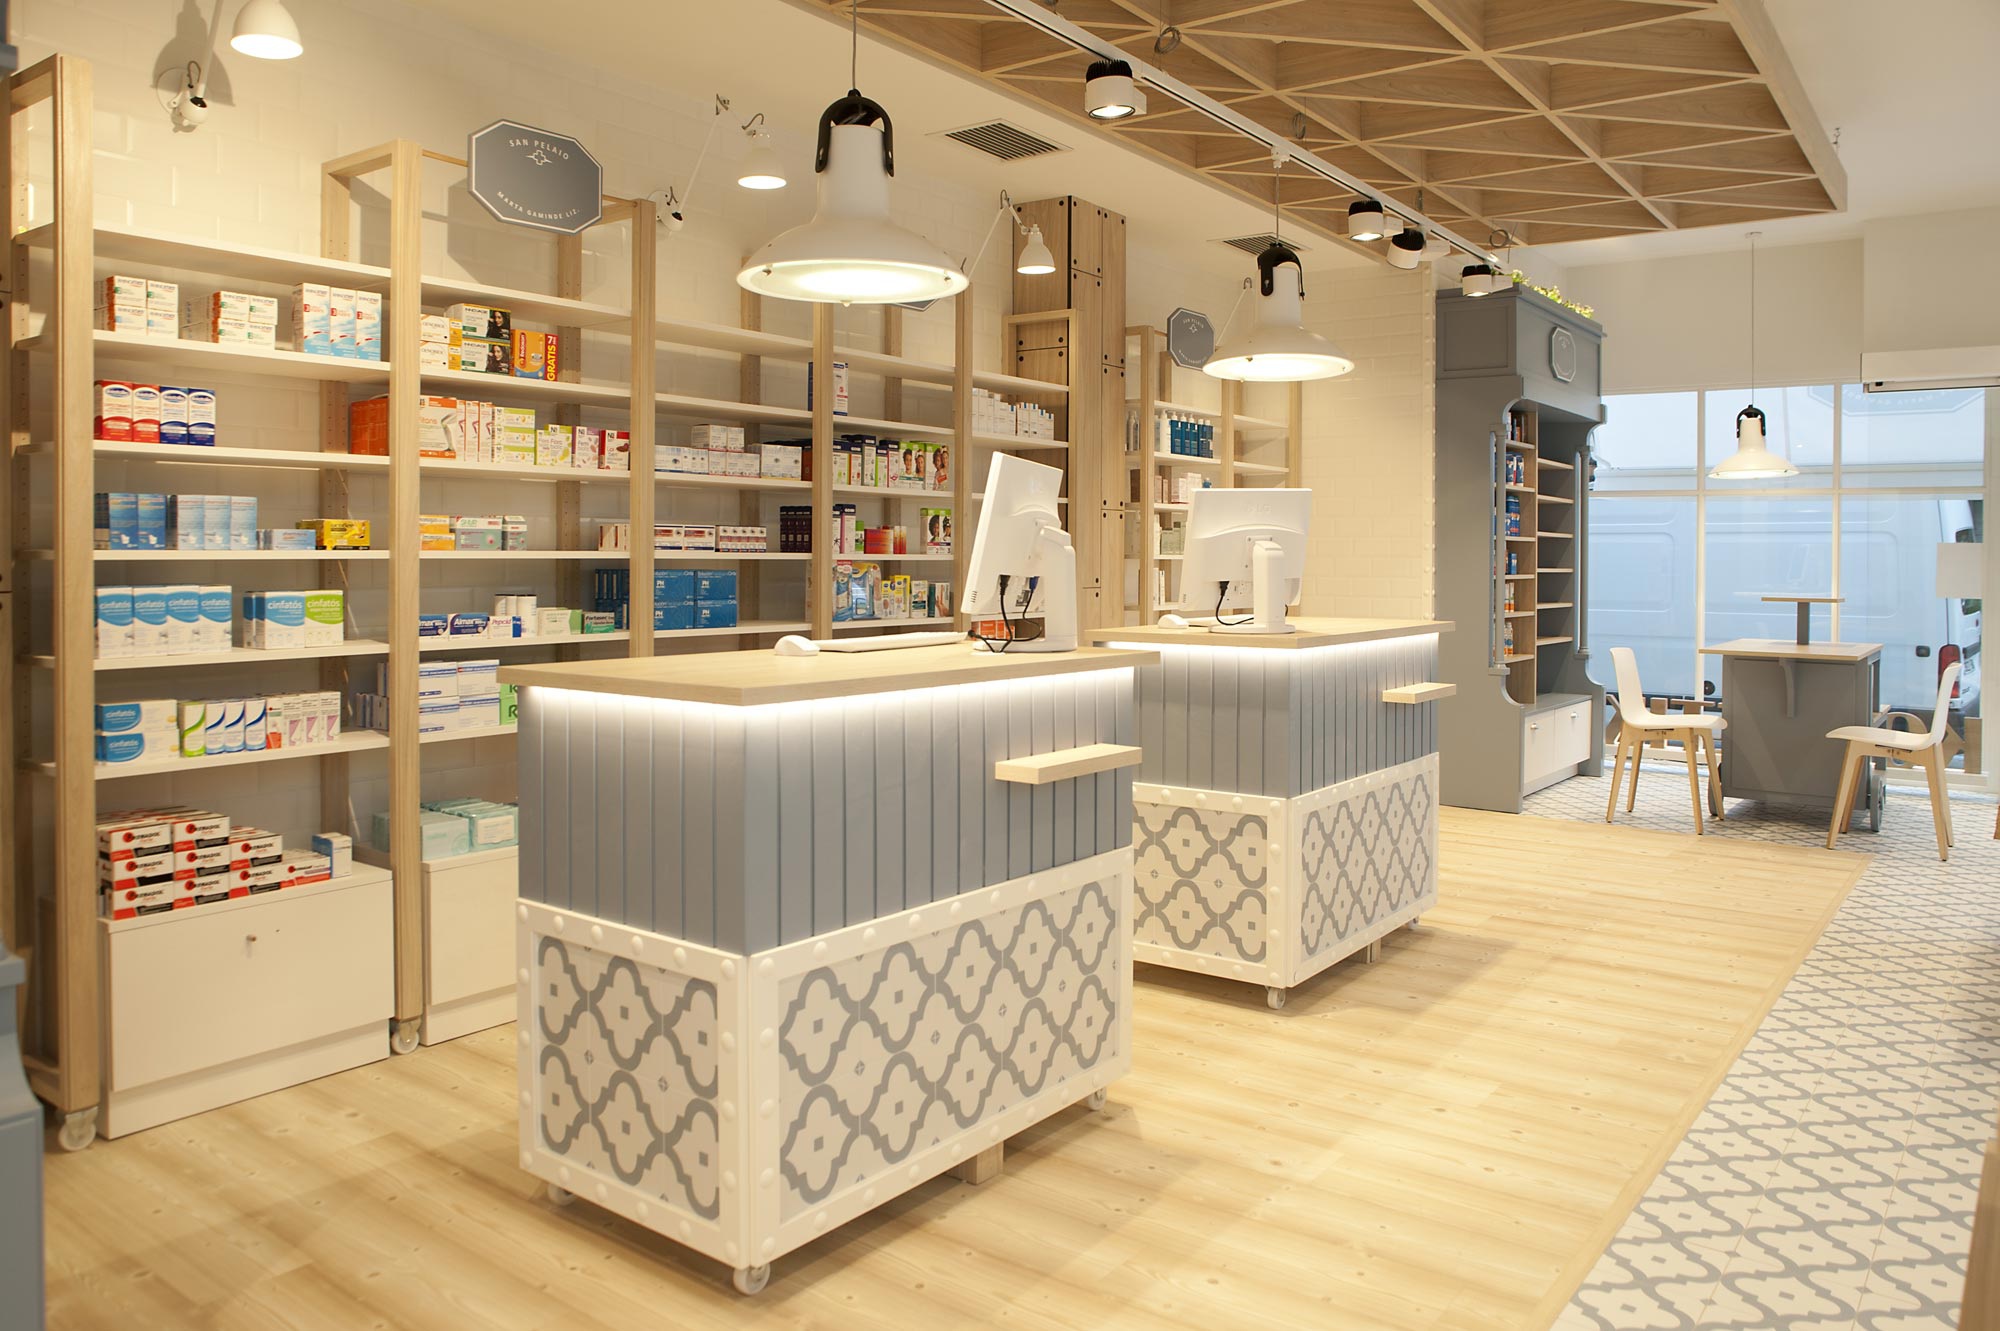 San Pelaio Pharmacy Lottus Wood Enea Design Sube Interiorismo